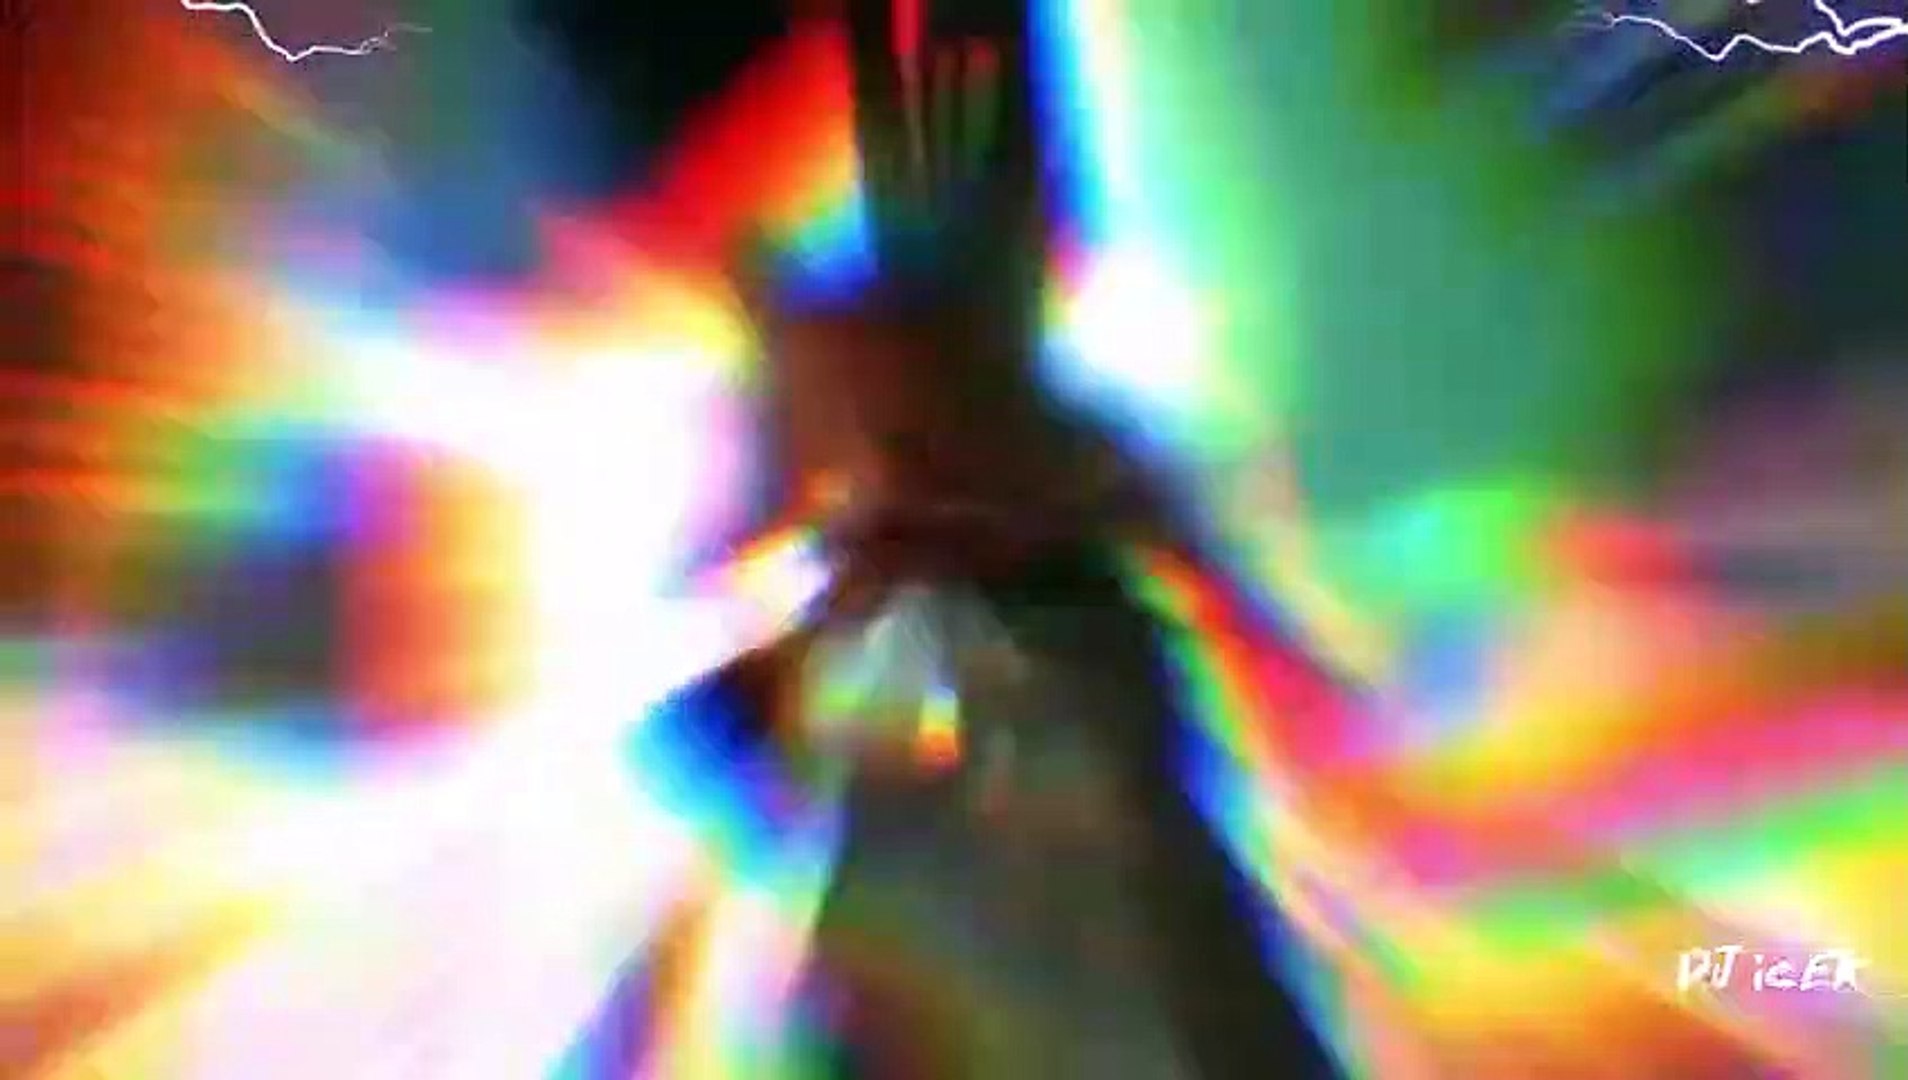 6IX9INE ft. Quavo & Offset - NO LIE (Music Video)